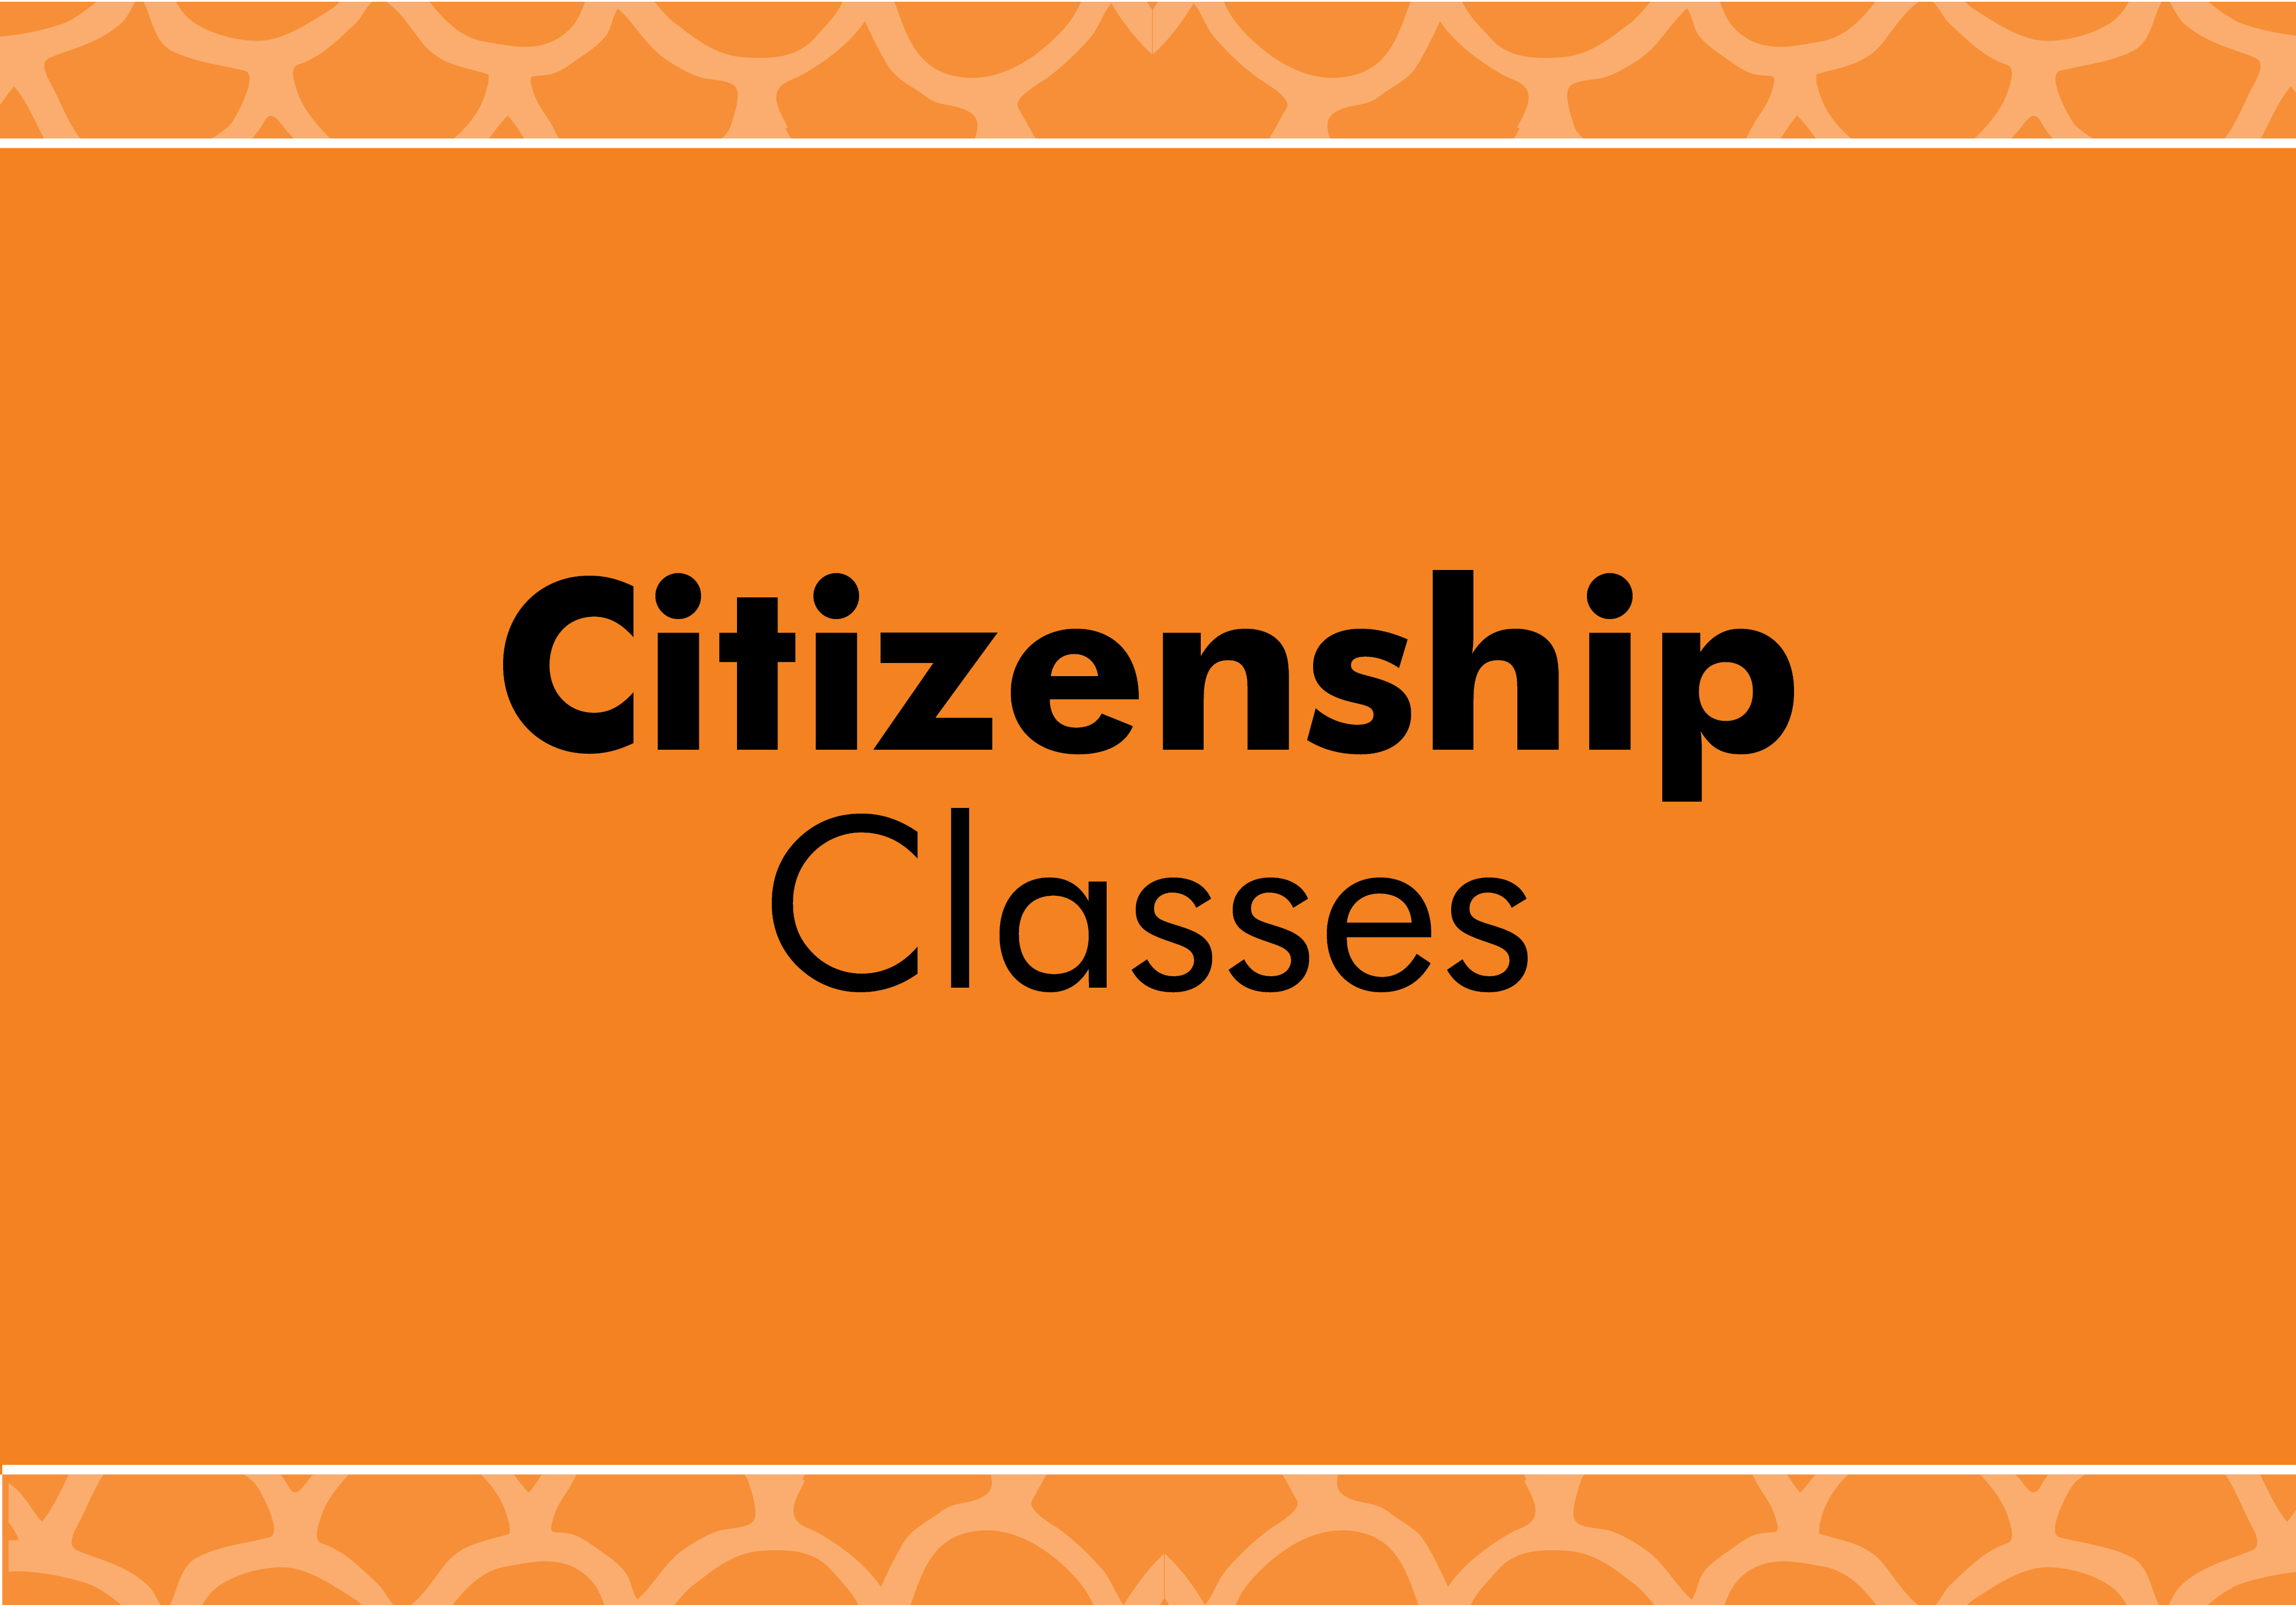 Citizenship classes